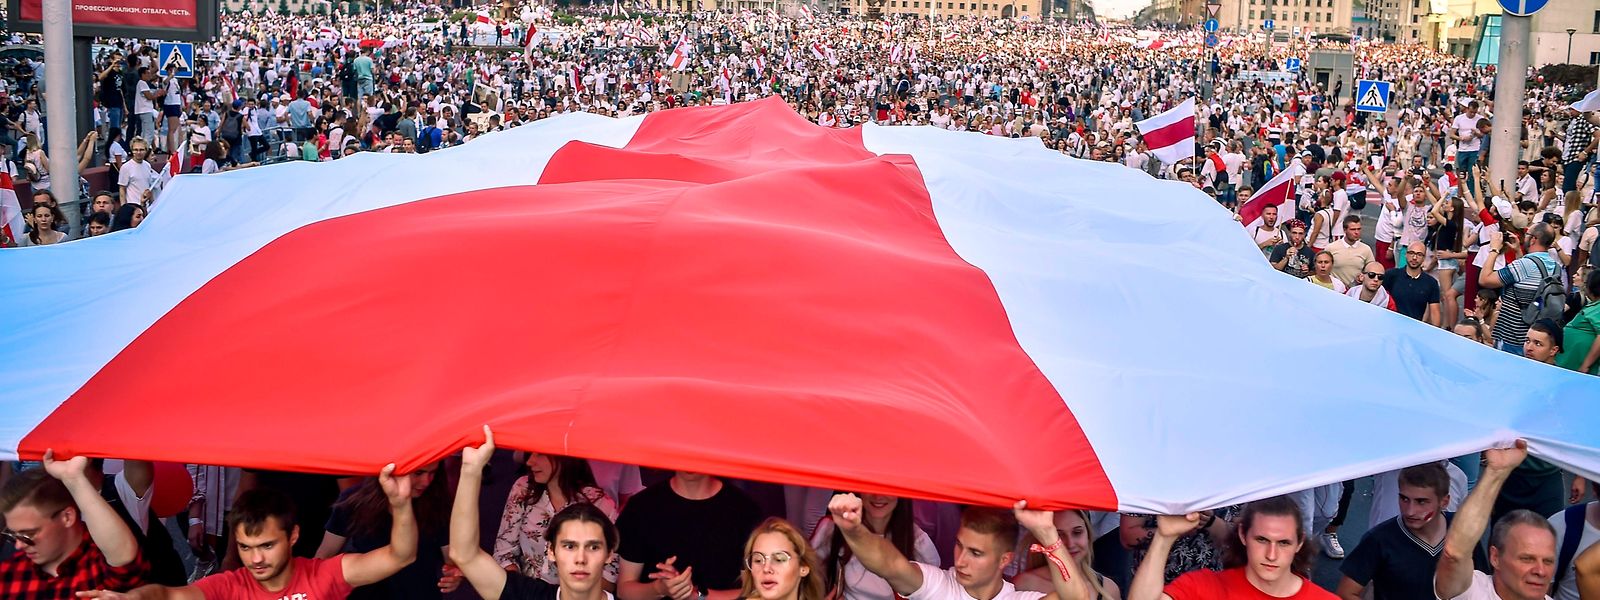 Alleine in der belarussischen Hauptstadt Minsk nahmen am Sonntag mindestens 100.000 Menschen an Protesten gegen Staats- und Polizeiwillkür teil.